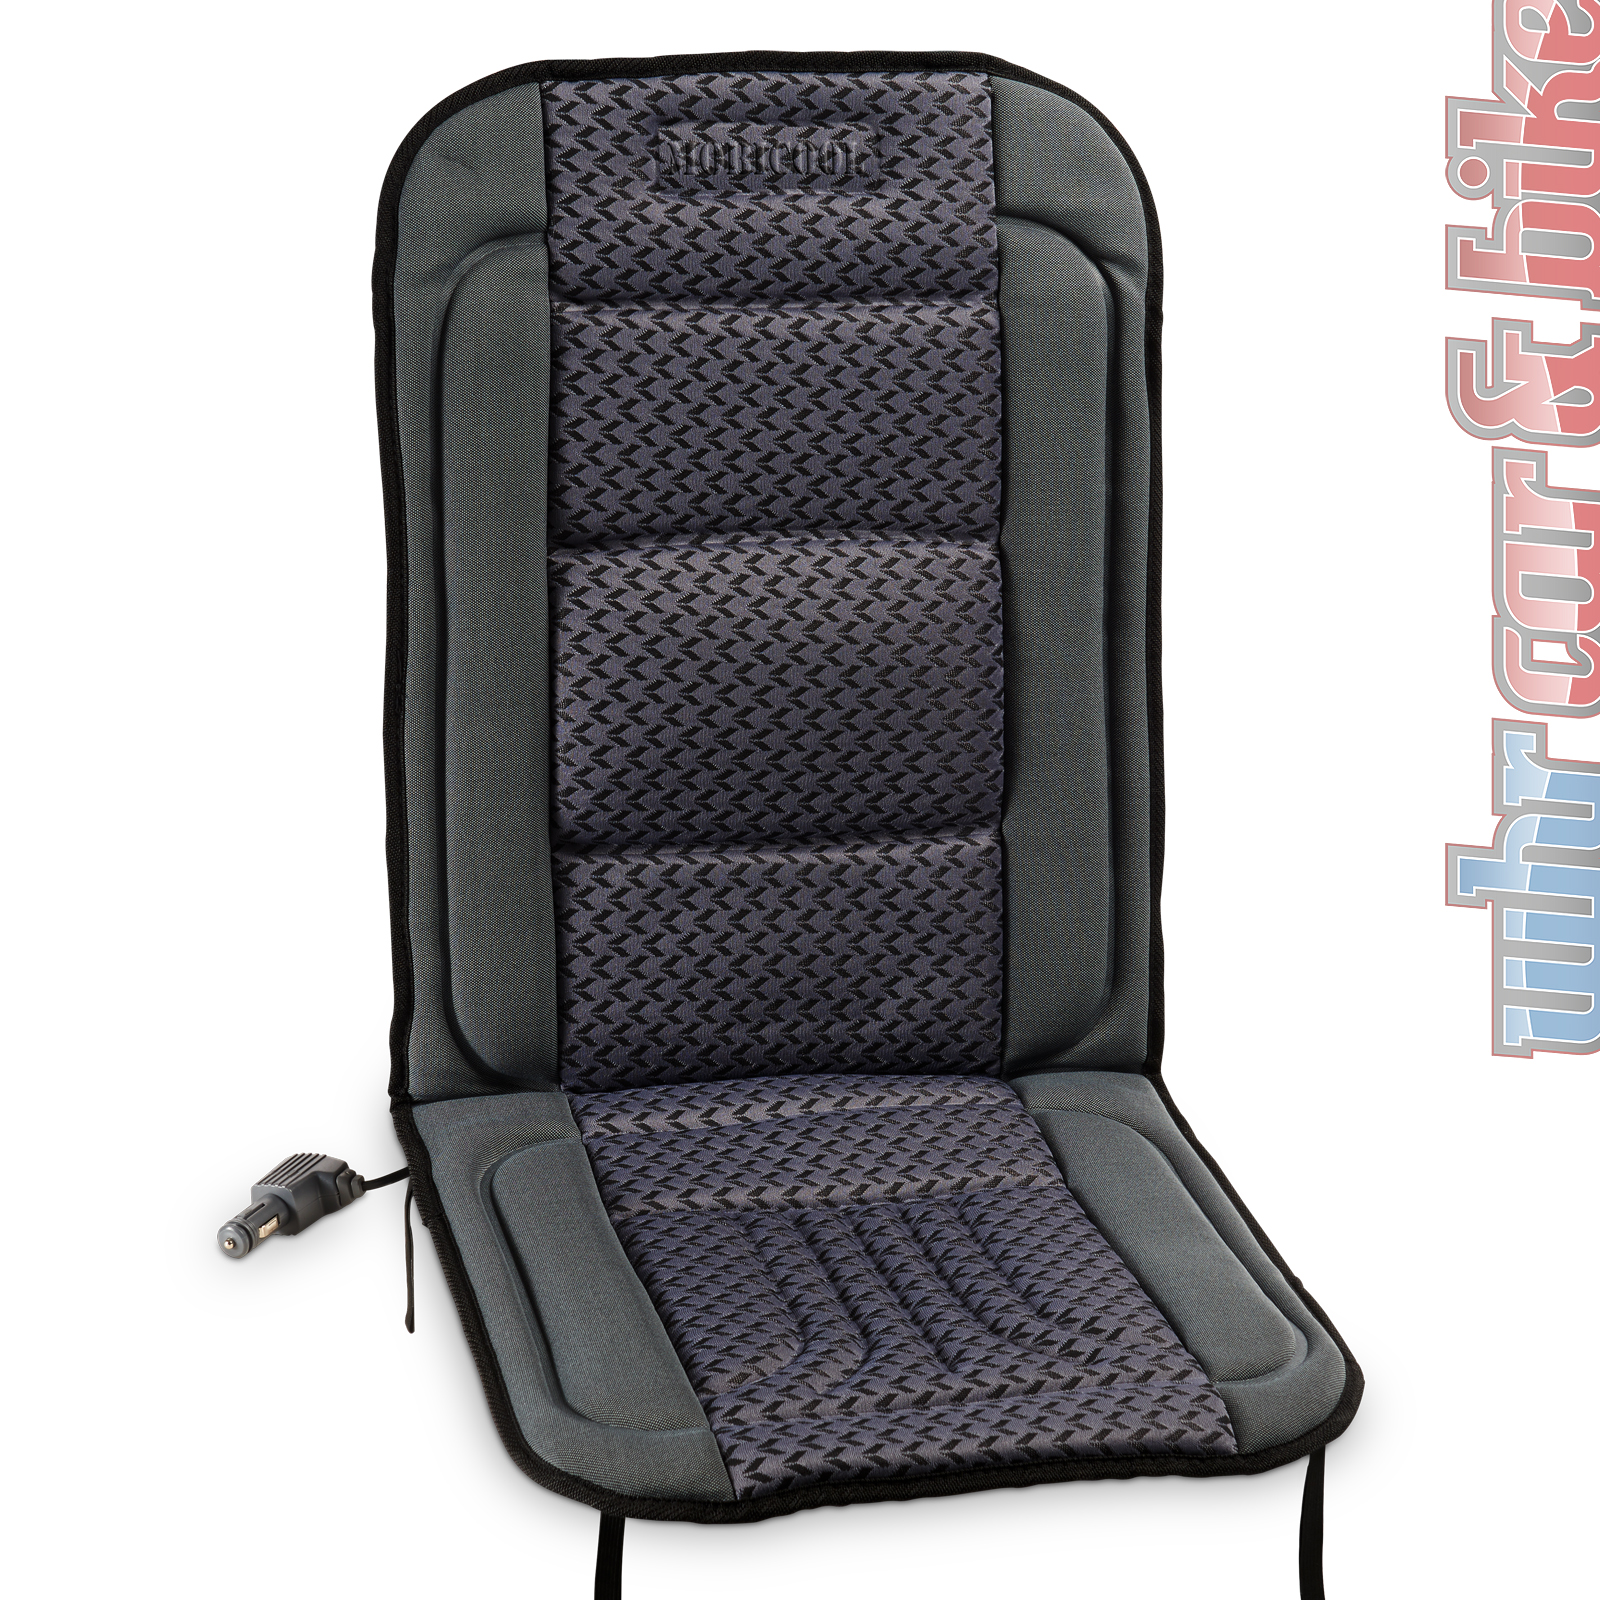 Sitzheizung beheizbare Sitzauflage 12V Mobicool MH-40-GS grau-schwarz Waeco, Sitzheizungen, Elektrik